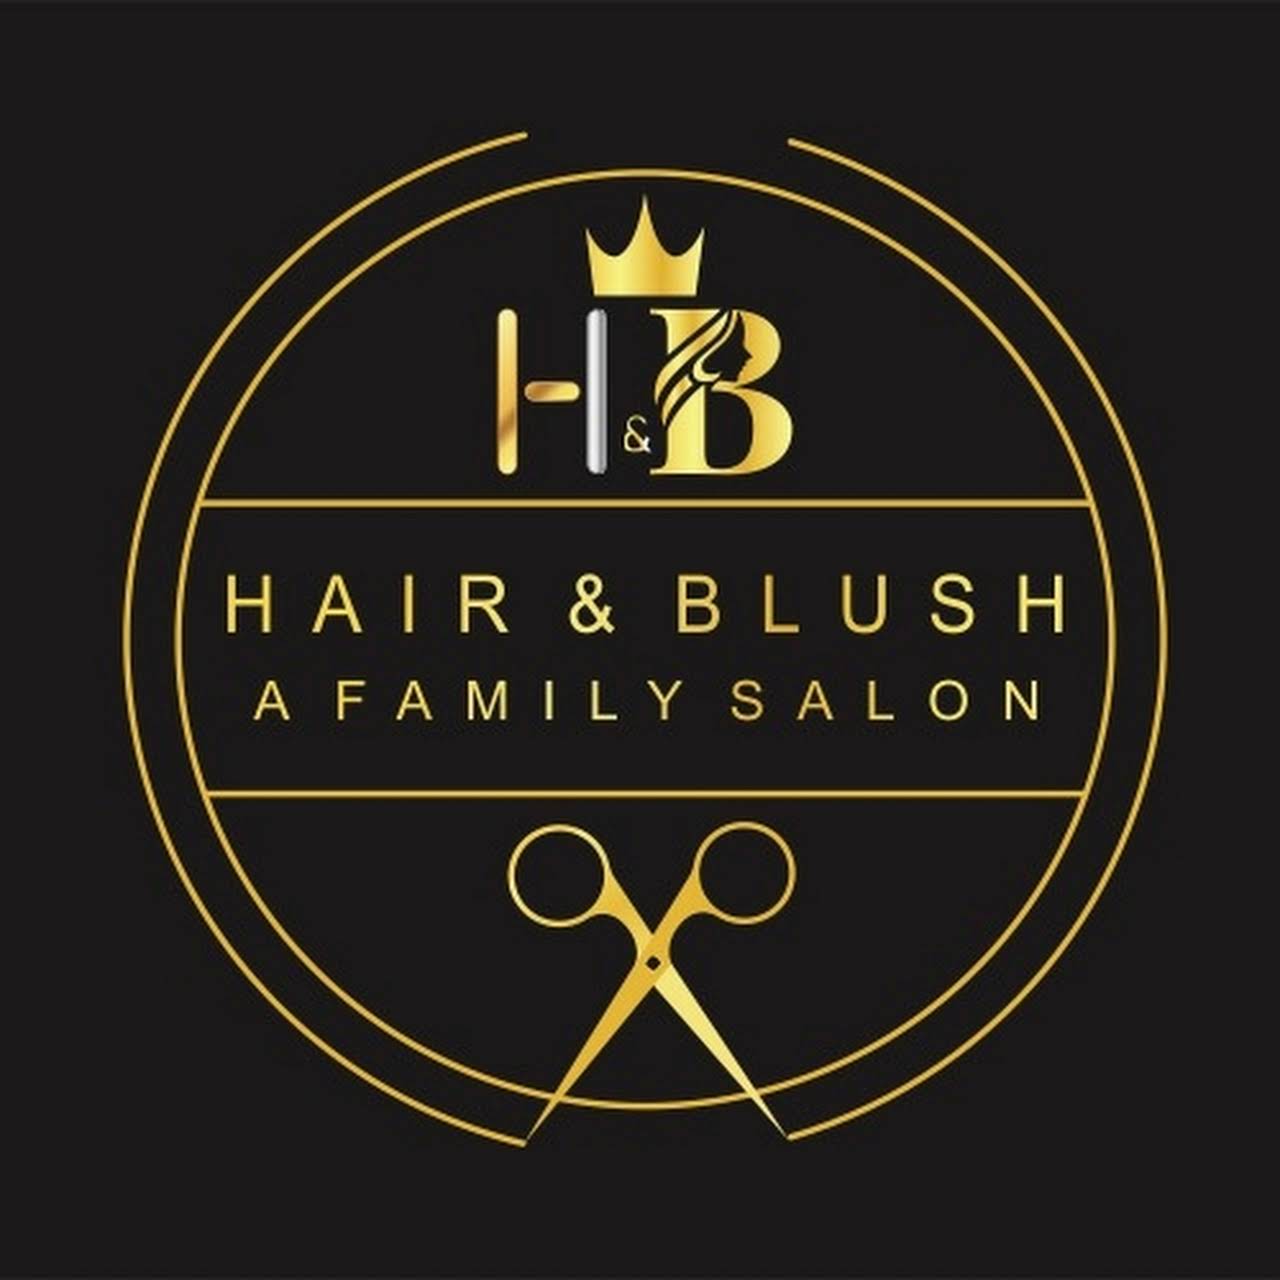 Hair & Blush - A Family Salon|Photographer|Active Life